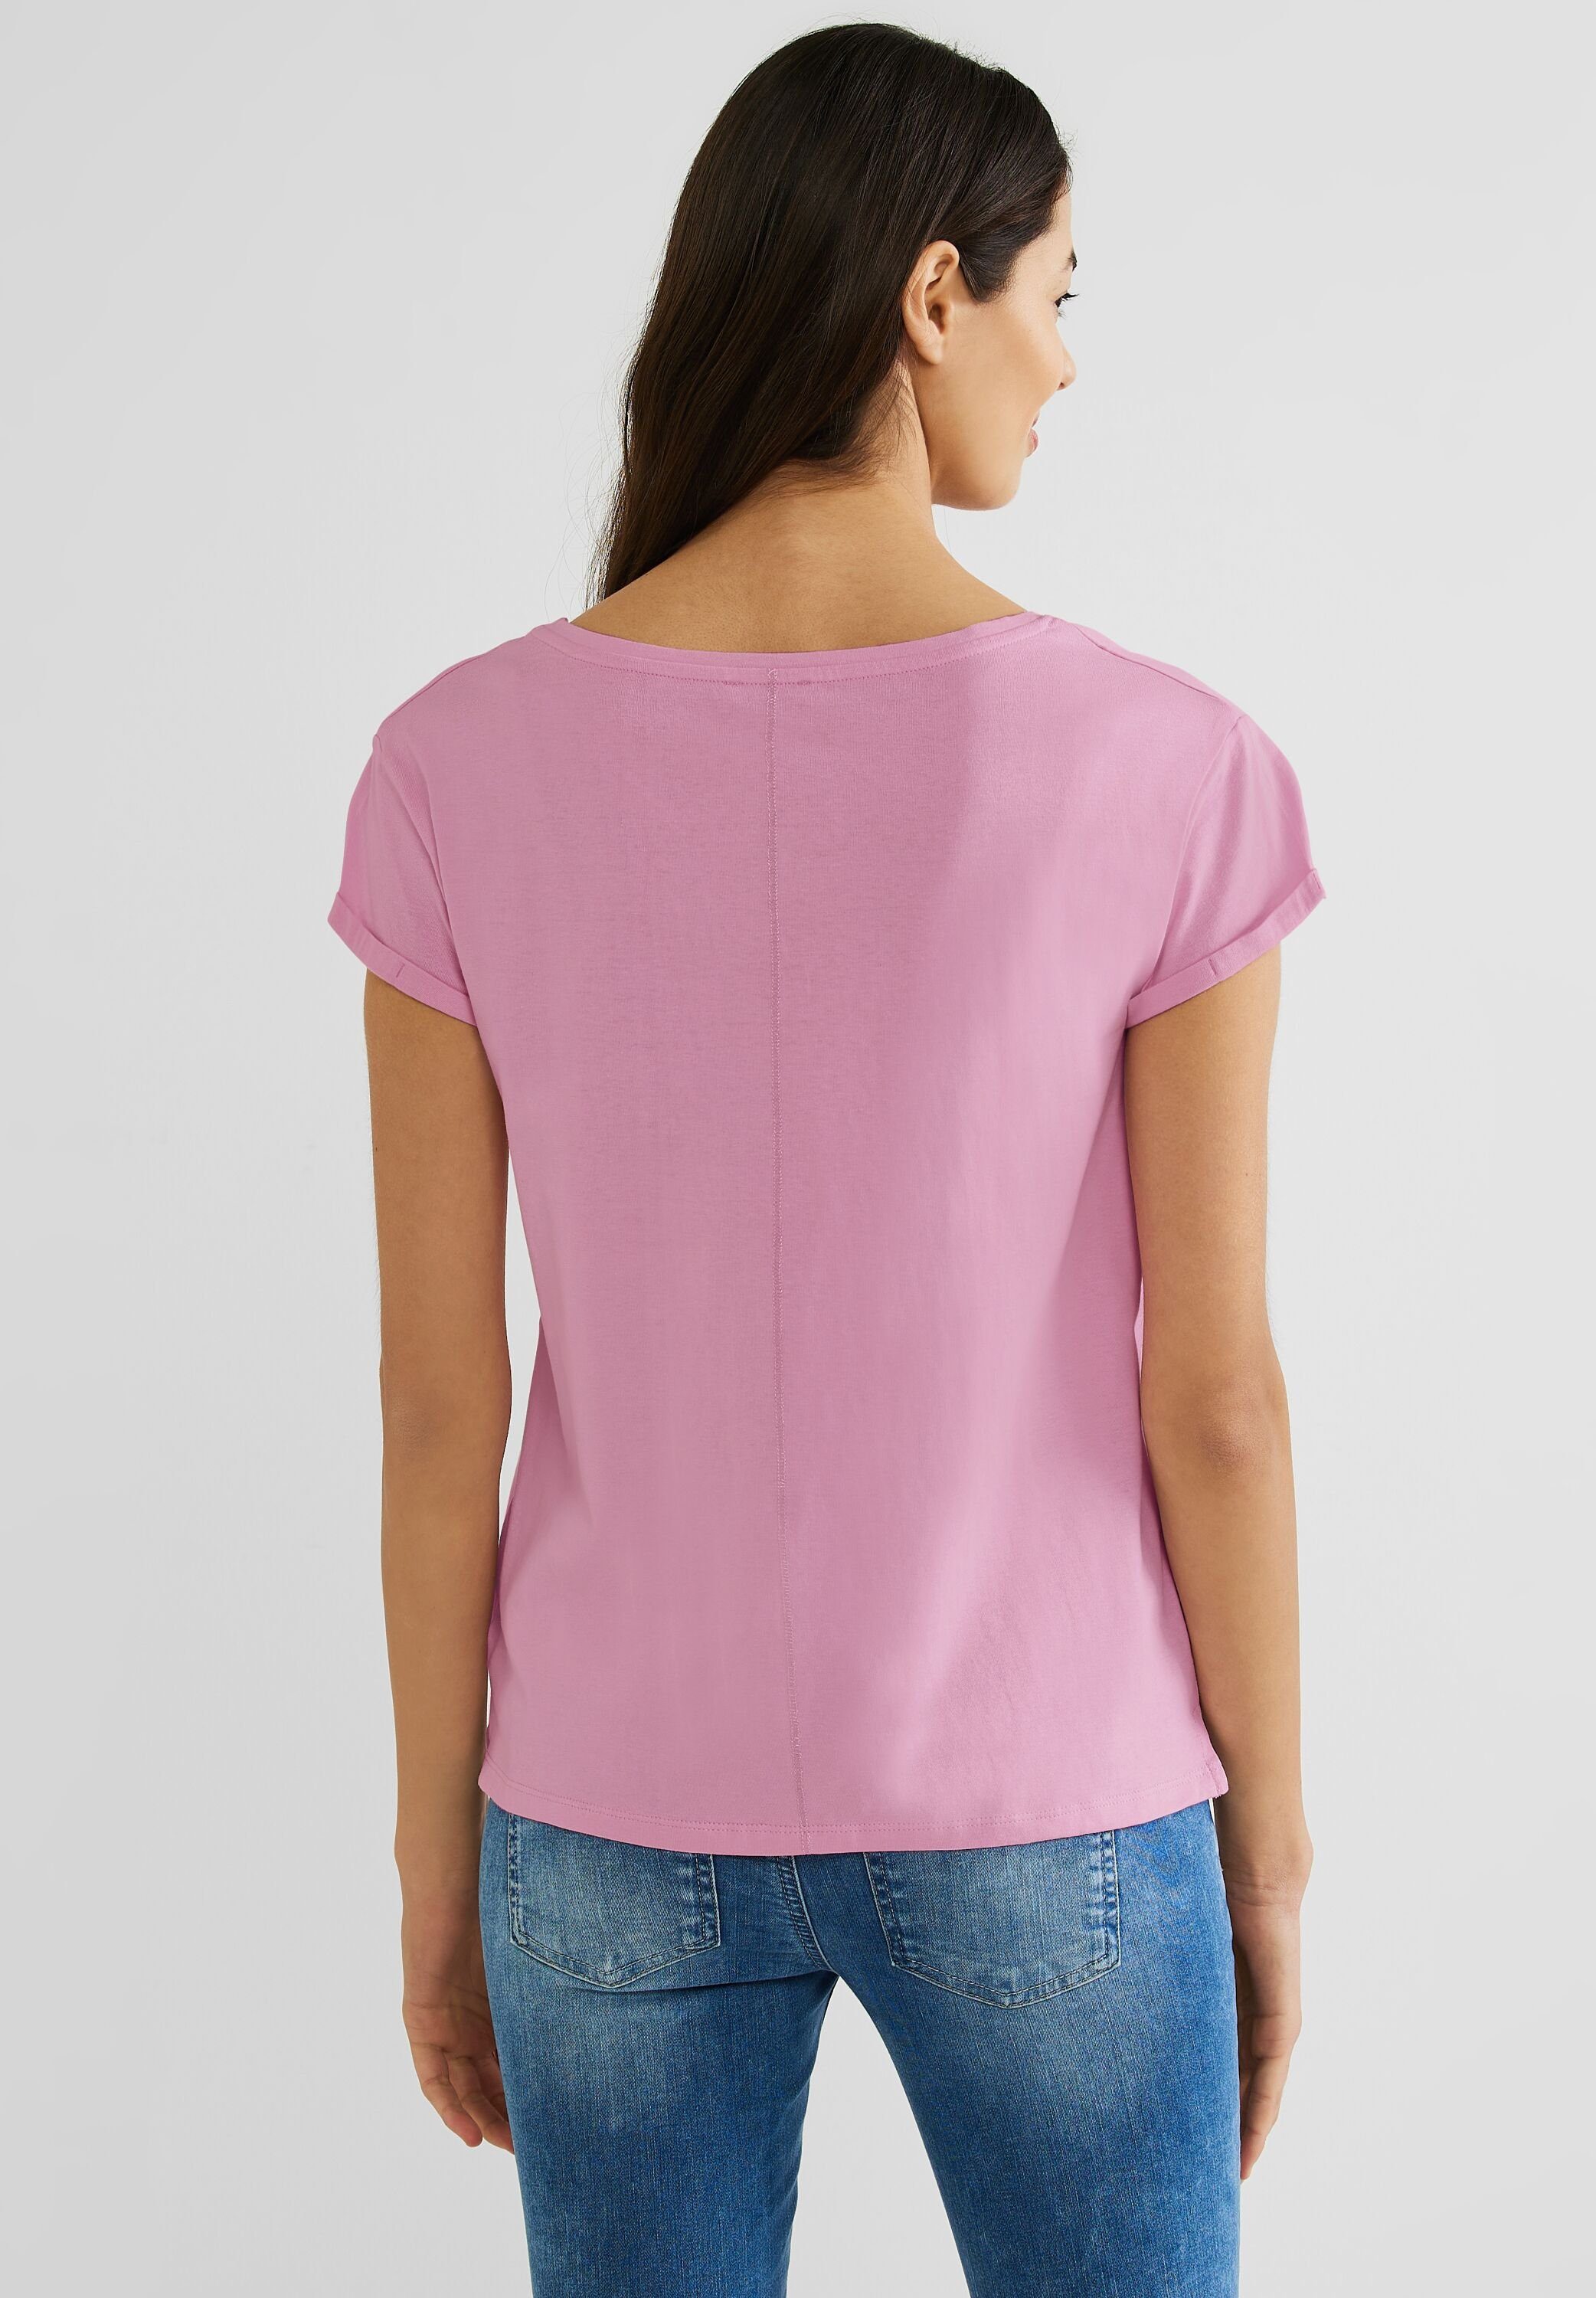 STREET Baumwolle reiner aus ONE rose T-Shirt wild